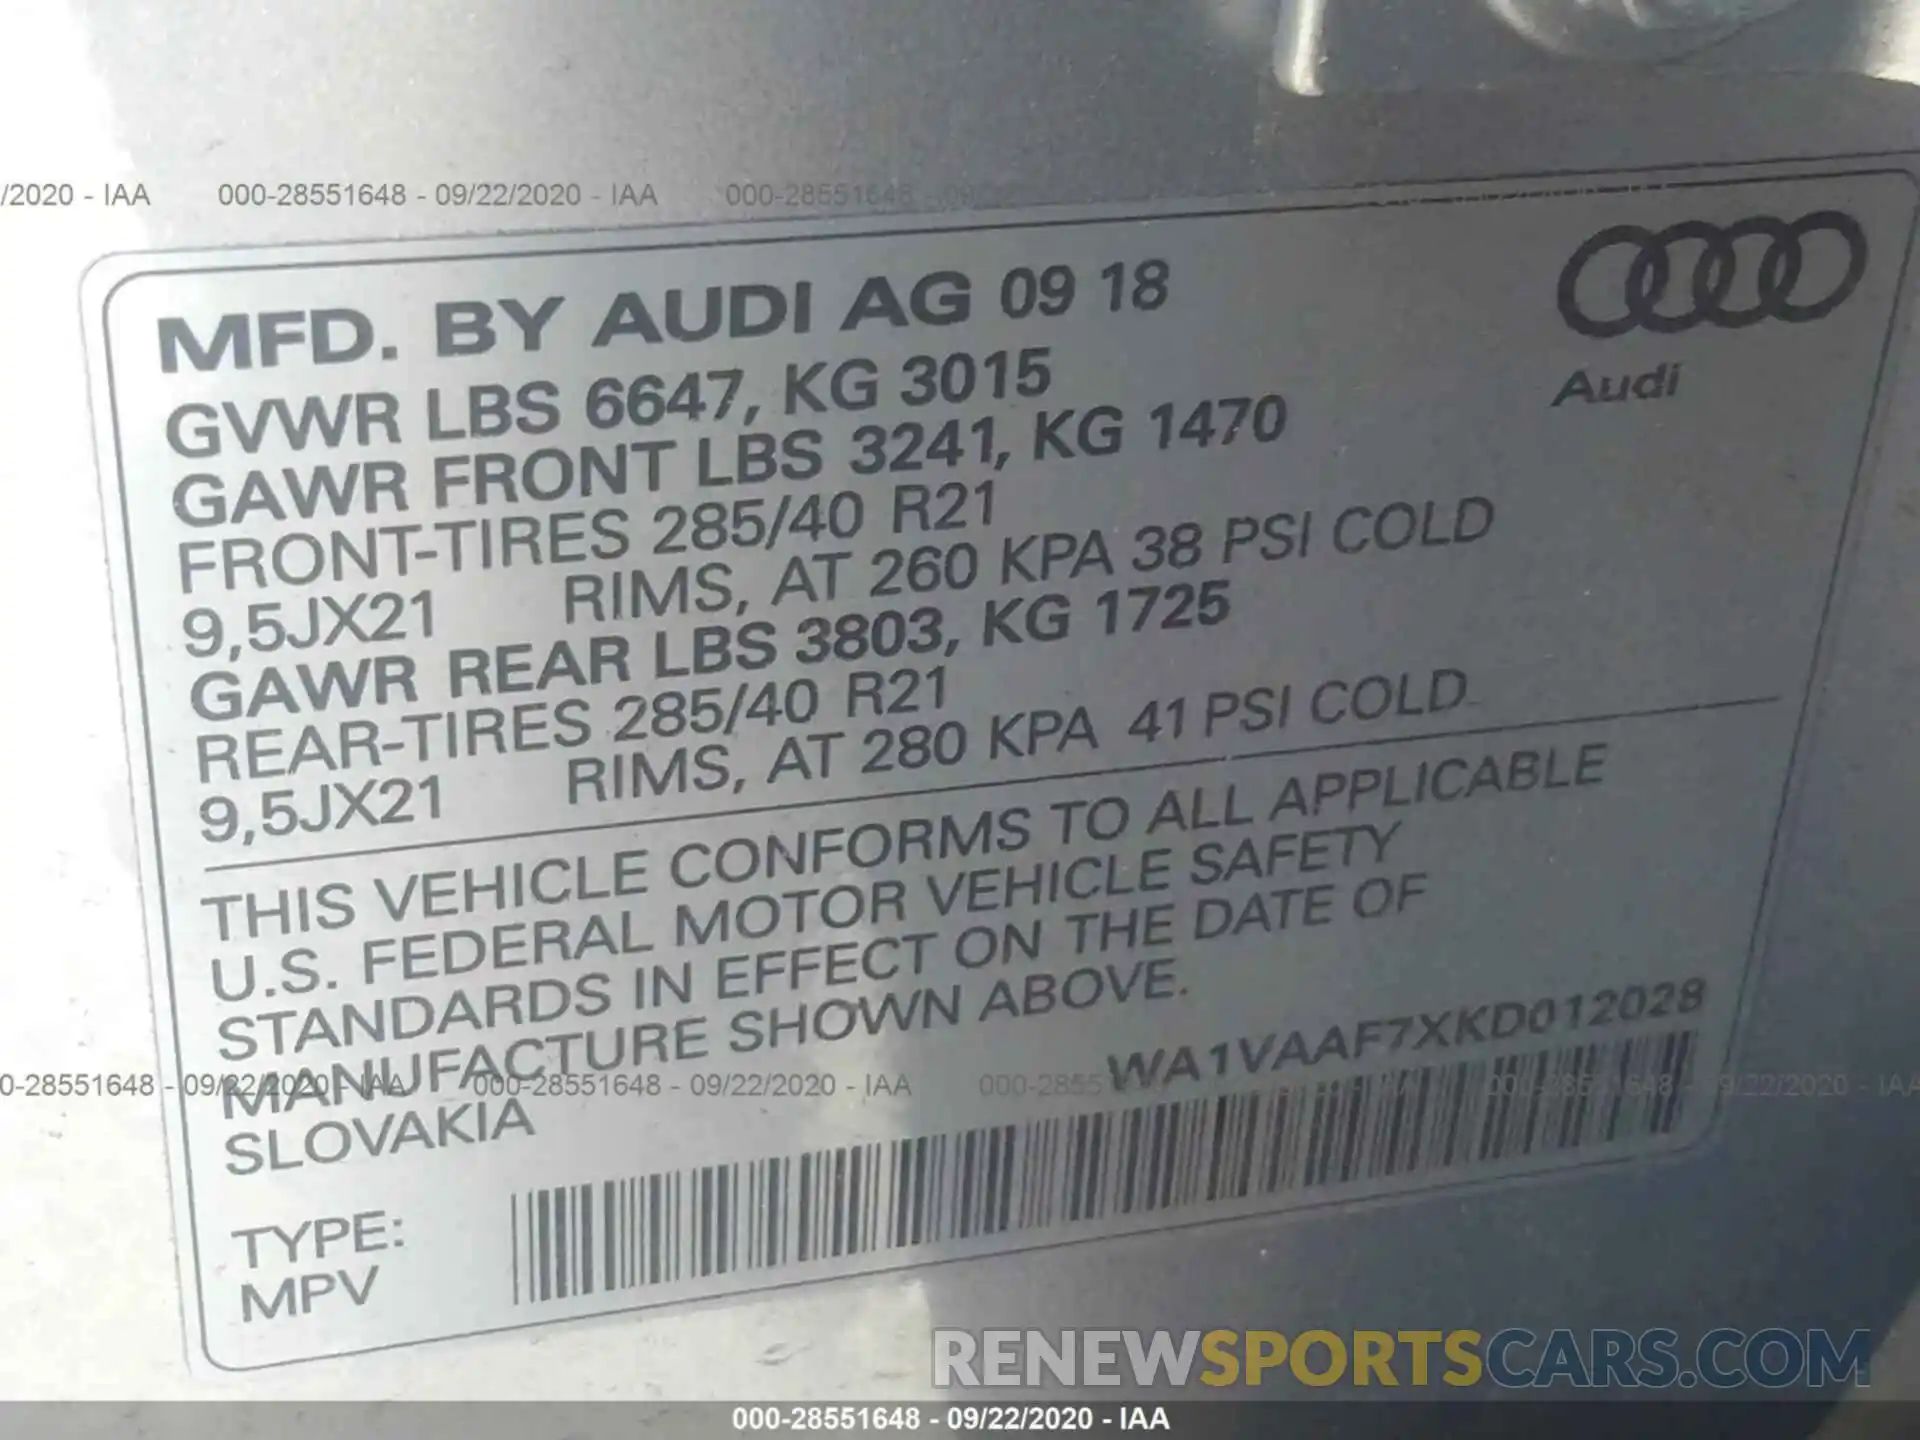 9 Фотография поврежденного автомобиля WA1VAAF7XKD012028 AUDI Q7 2019